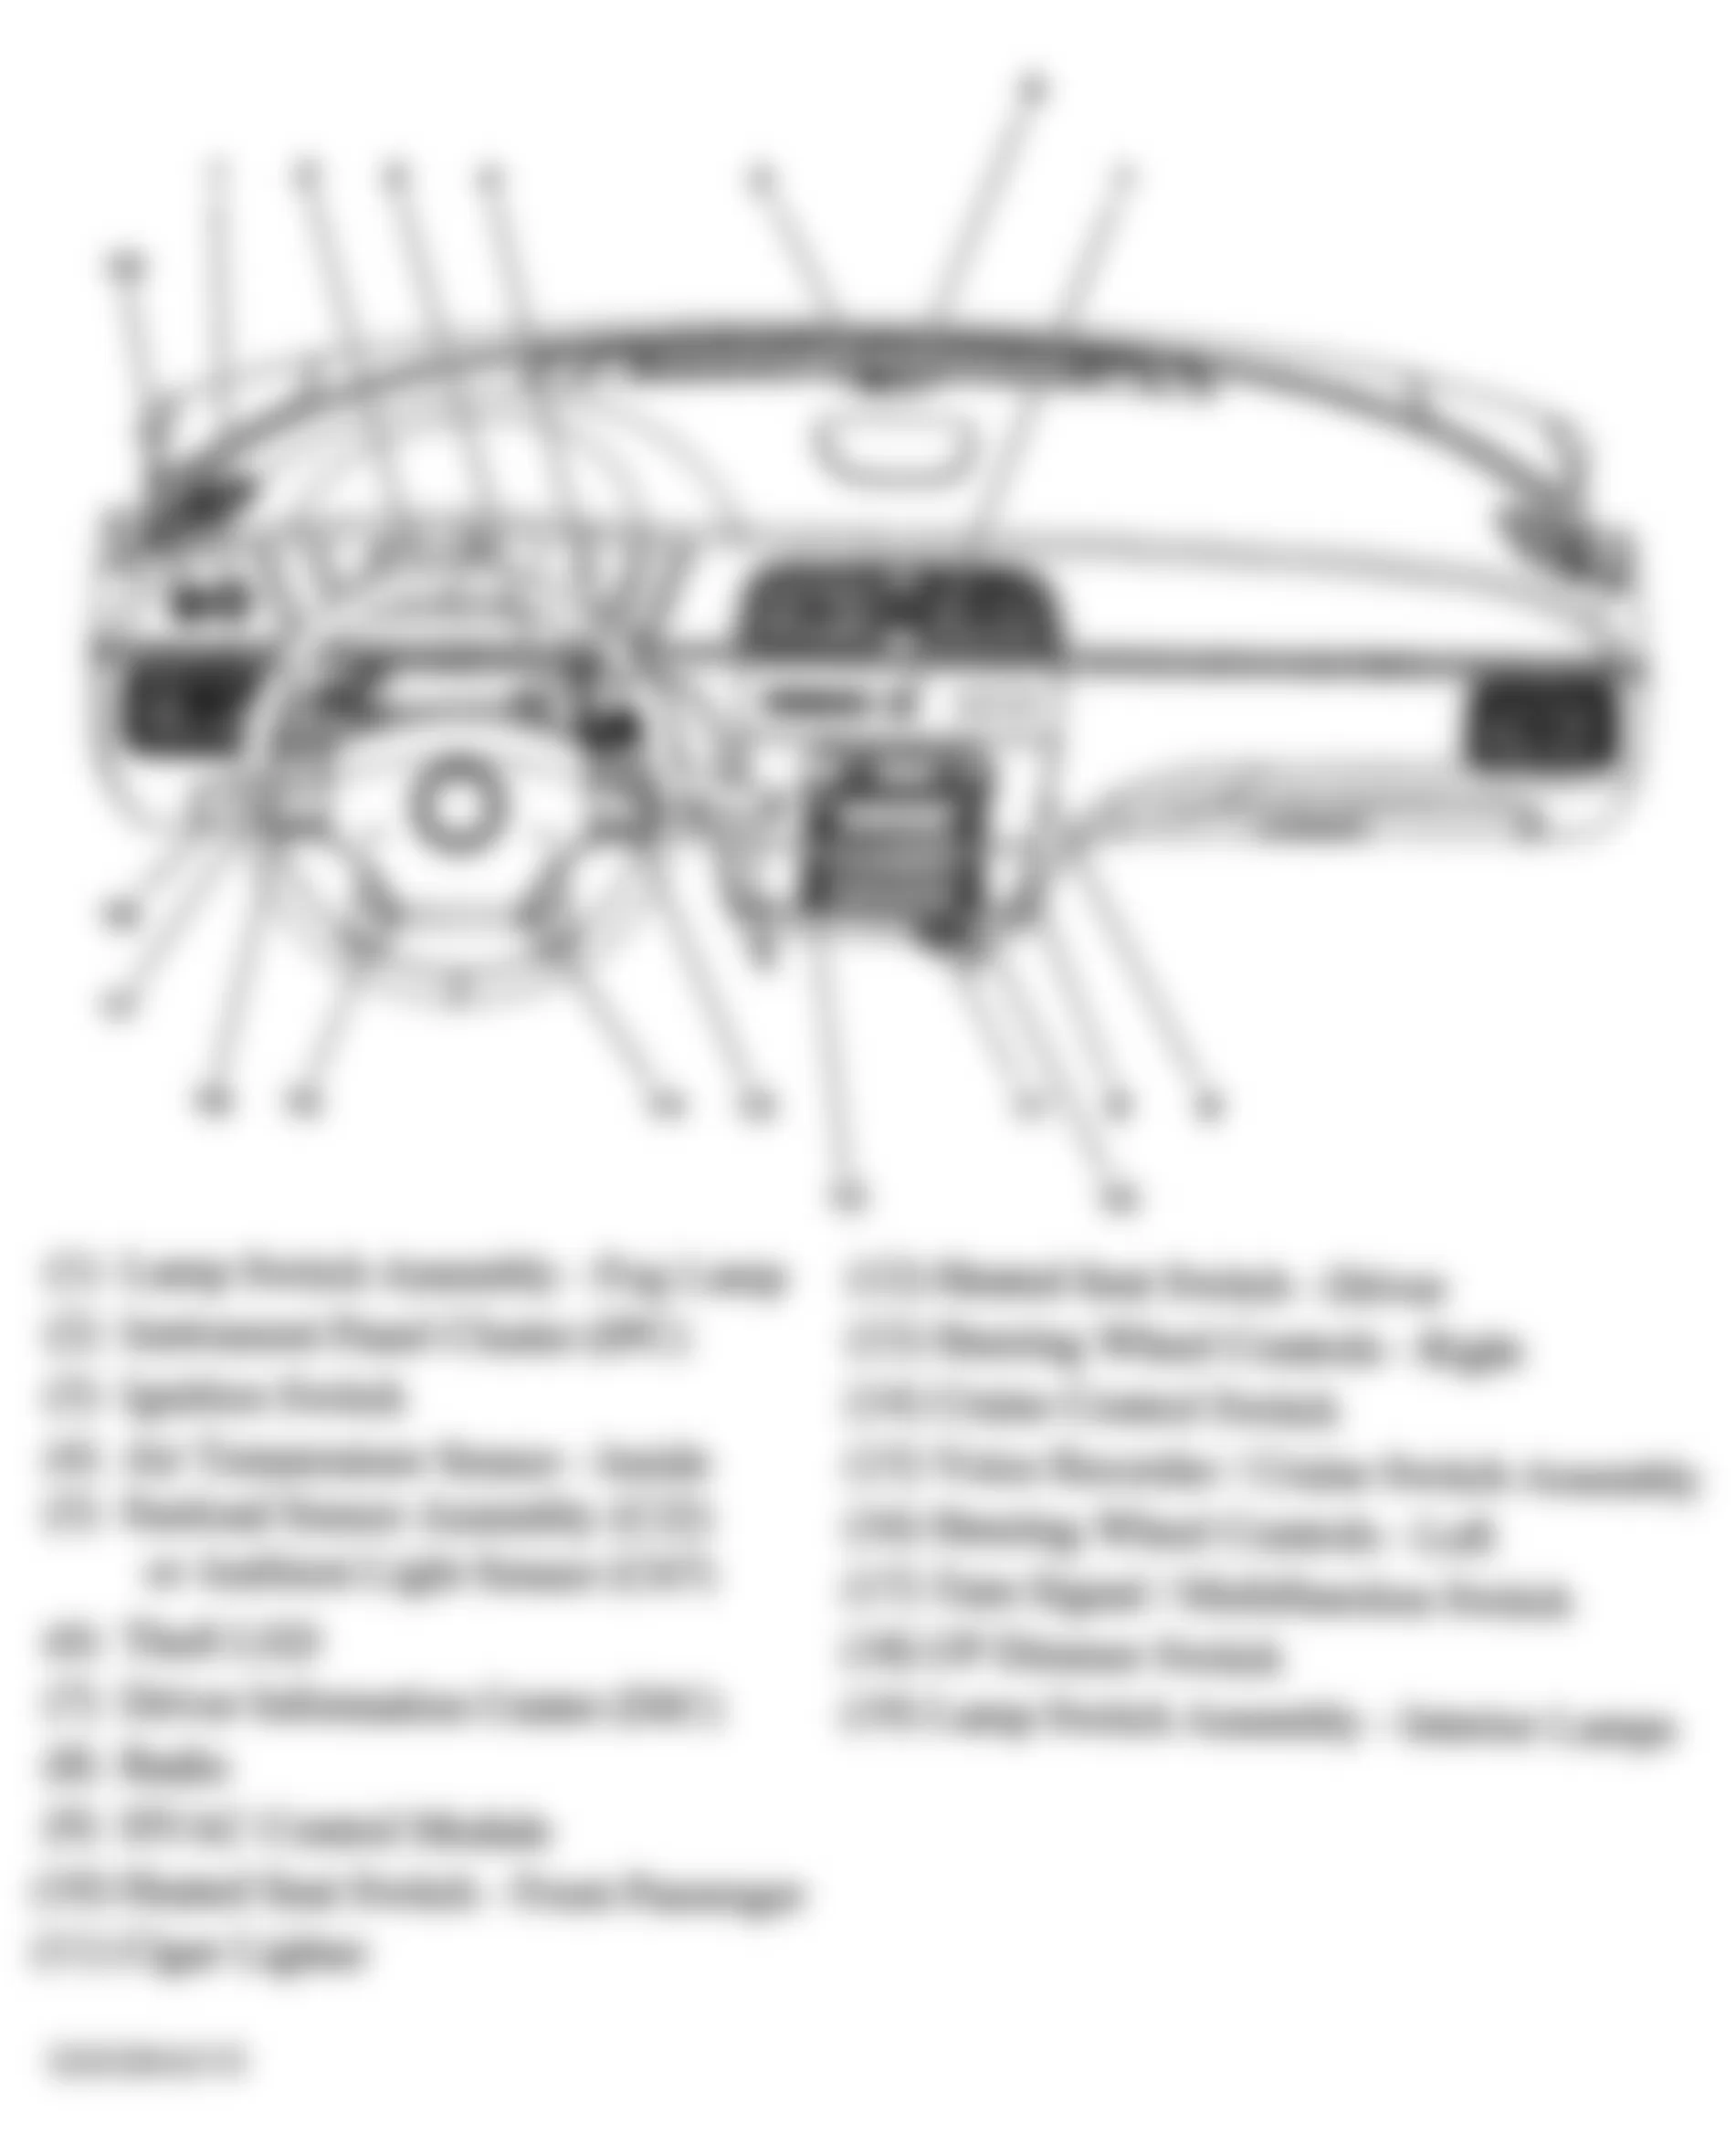 Buick Allure CX 2005 - Component Locations -  Dash